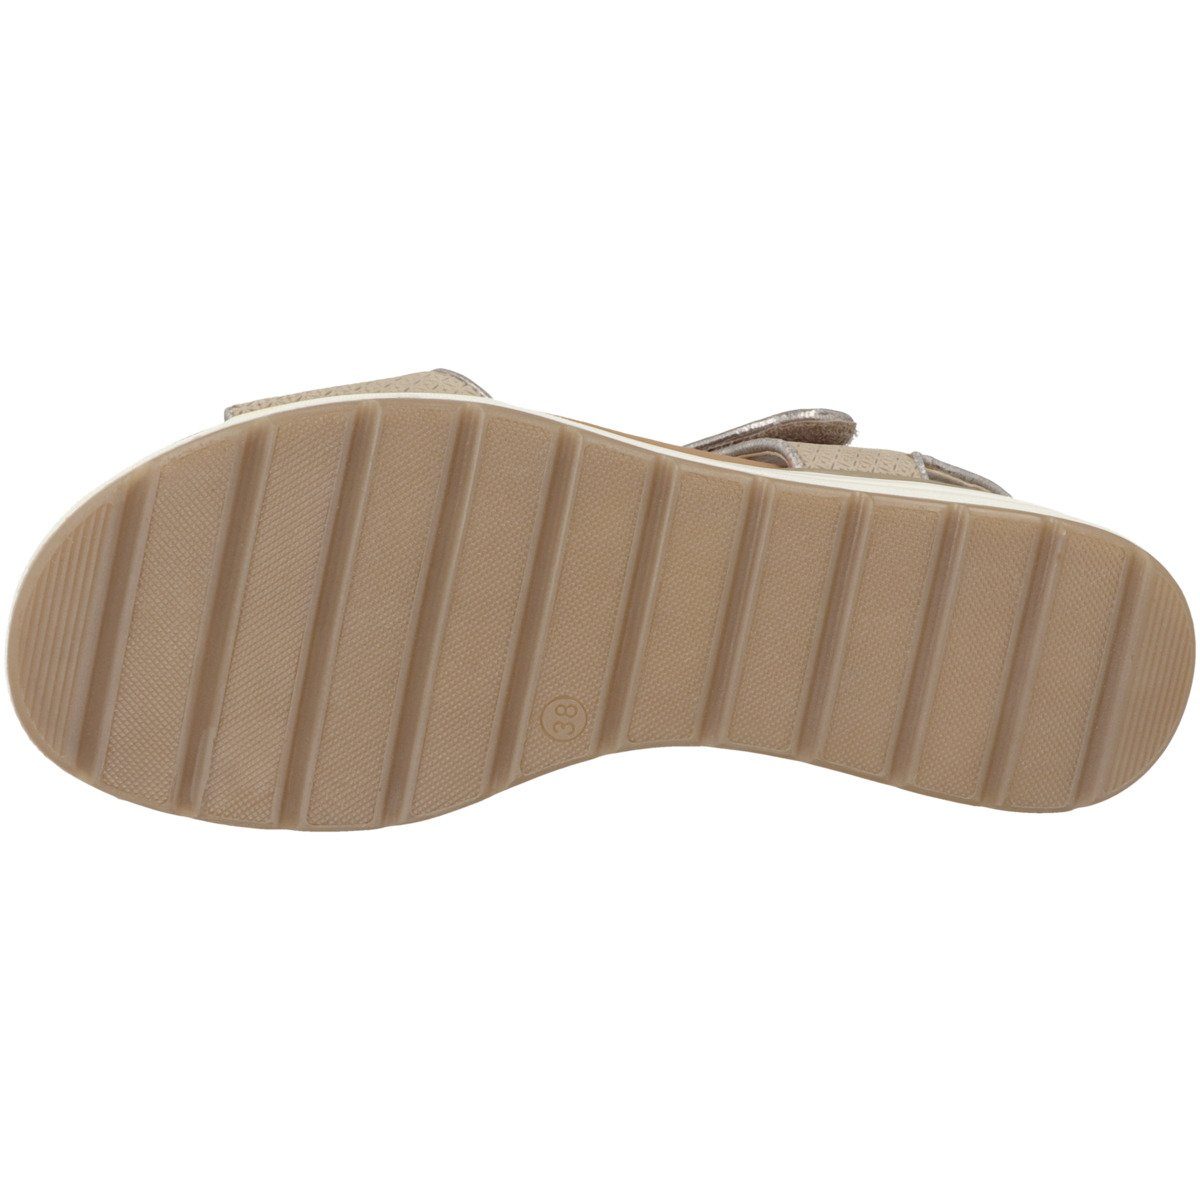 Damen Sandale Nubuc Taupe 9-28307-20 Caprice